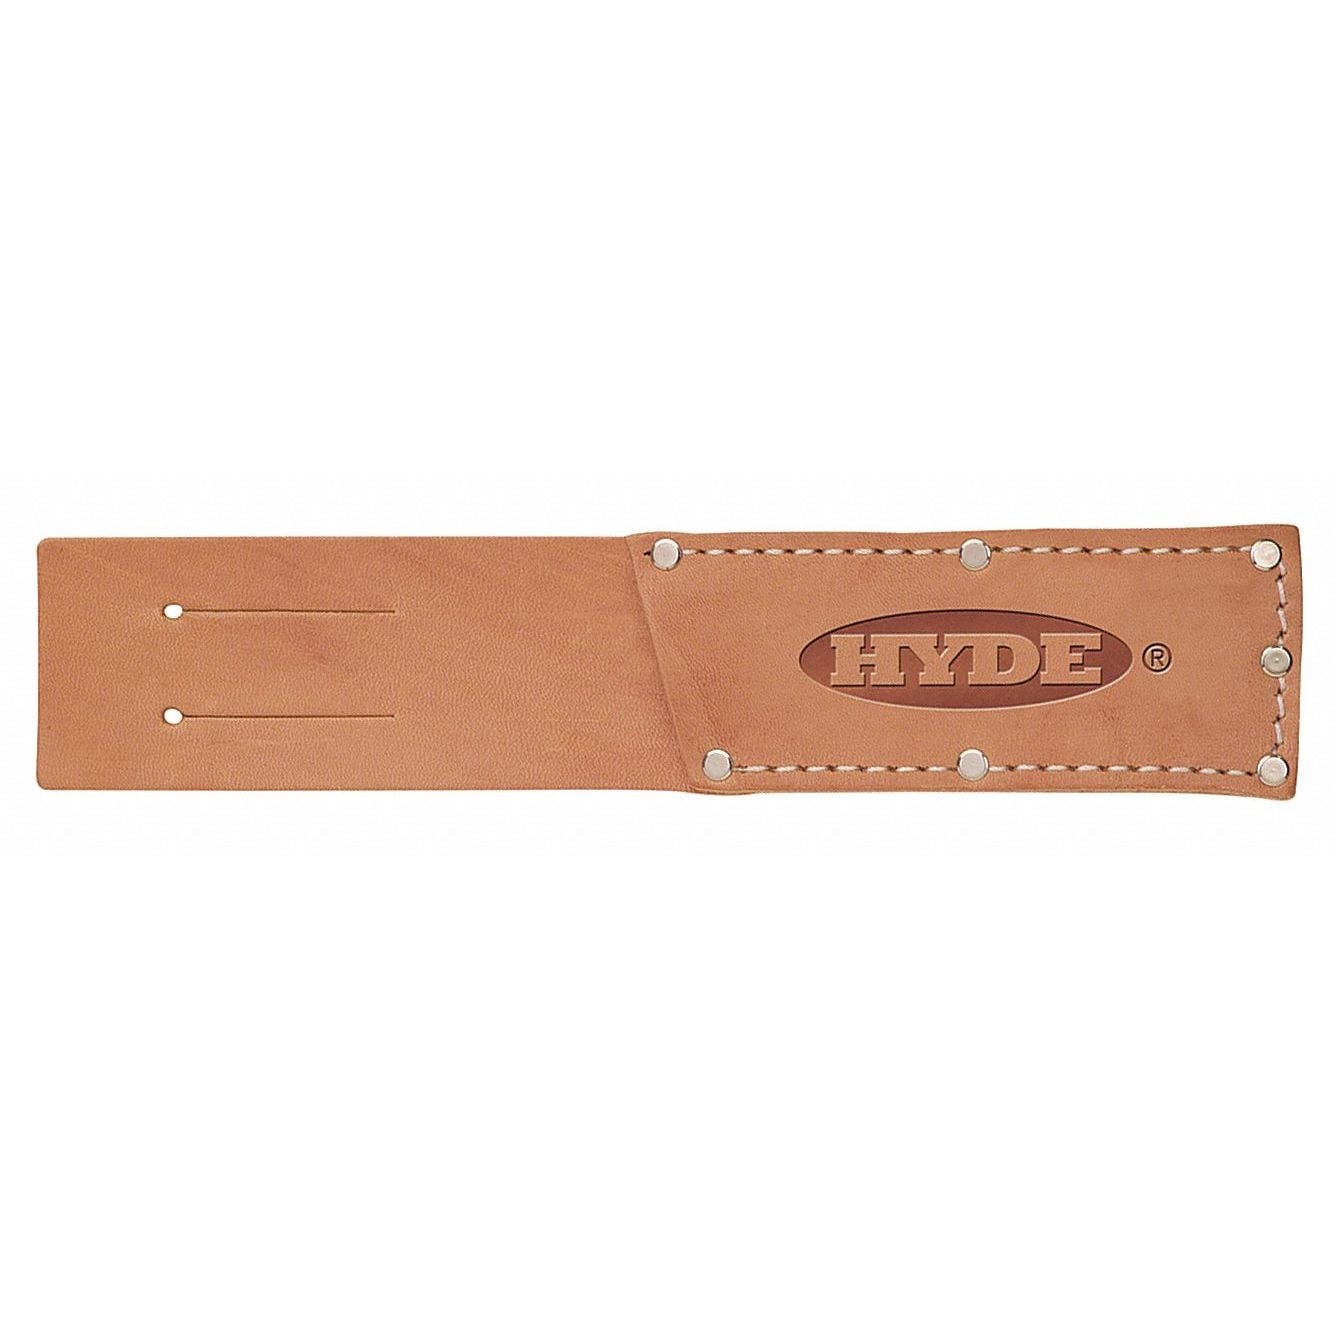 Hyde Tan,Tool Sheath,Synthetic Leather 56500 - 1 E...